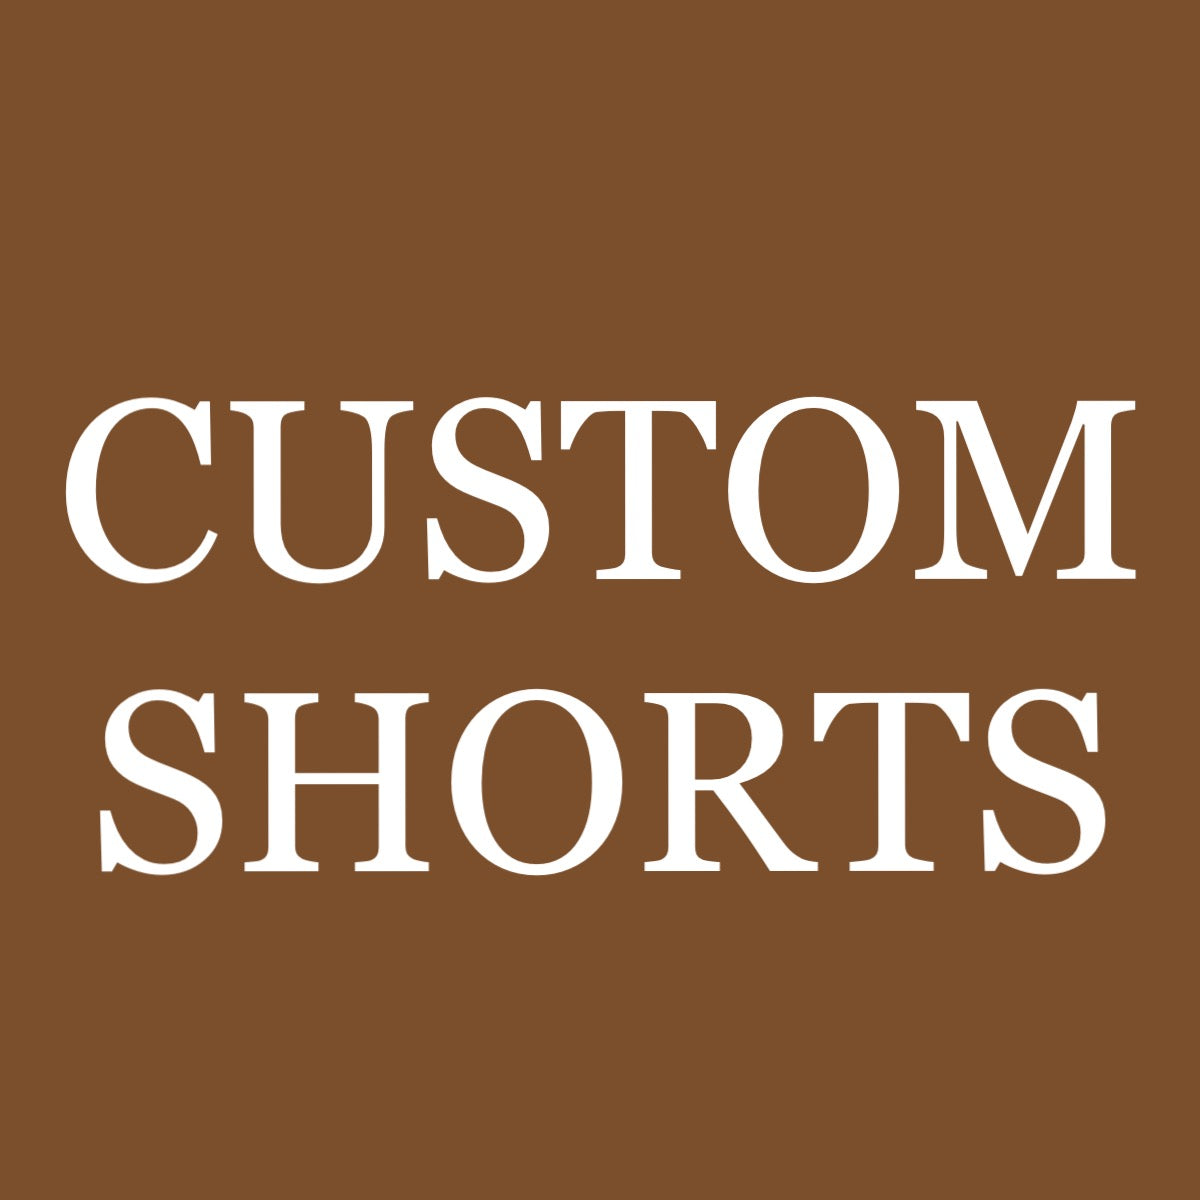 Custom SHORTS